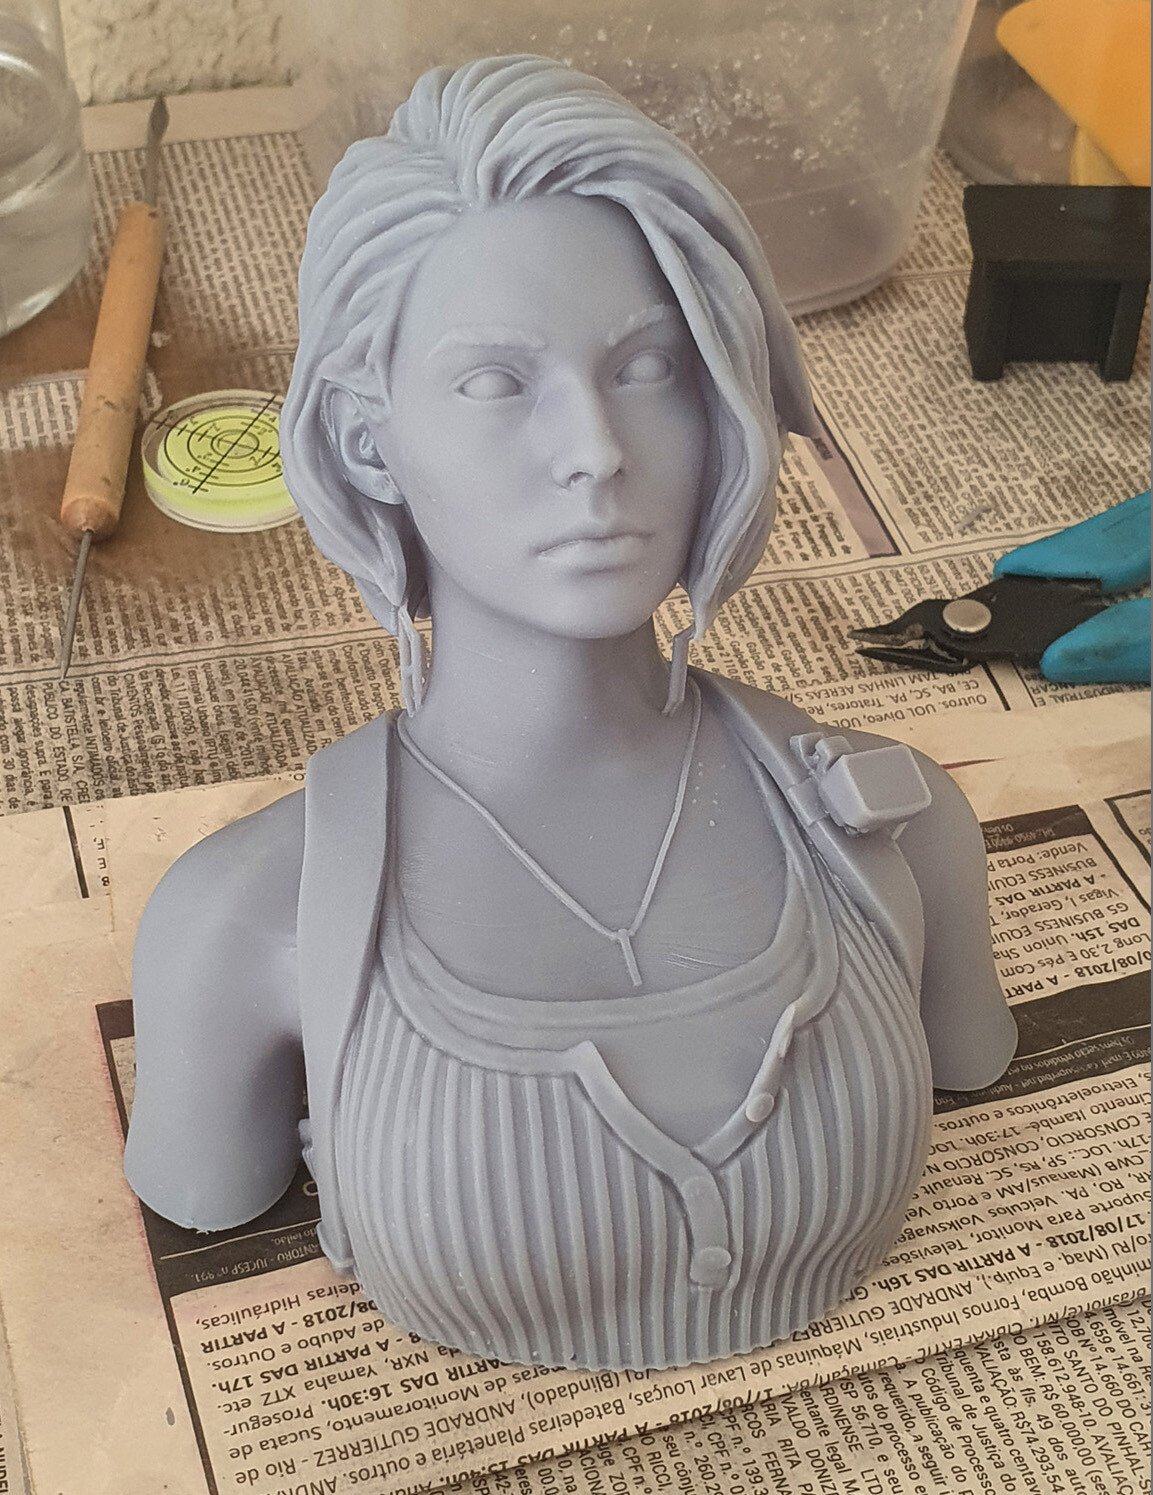 Jill Valentine - Resident Evil 3D model 3D printable